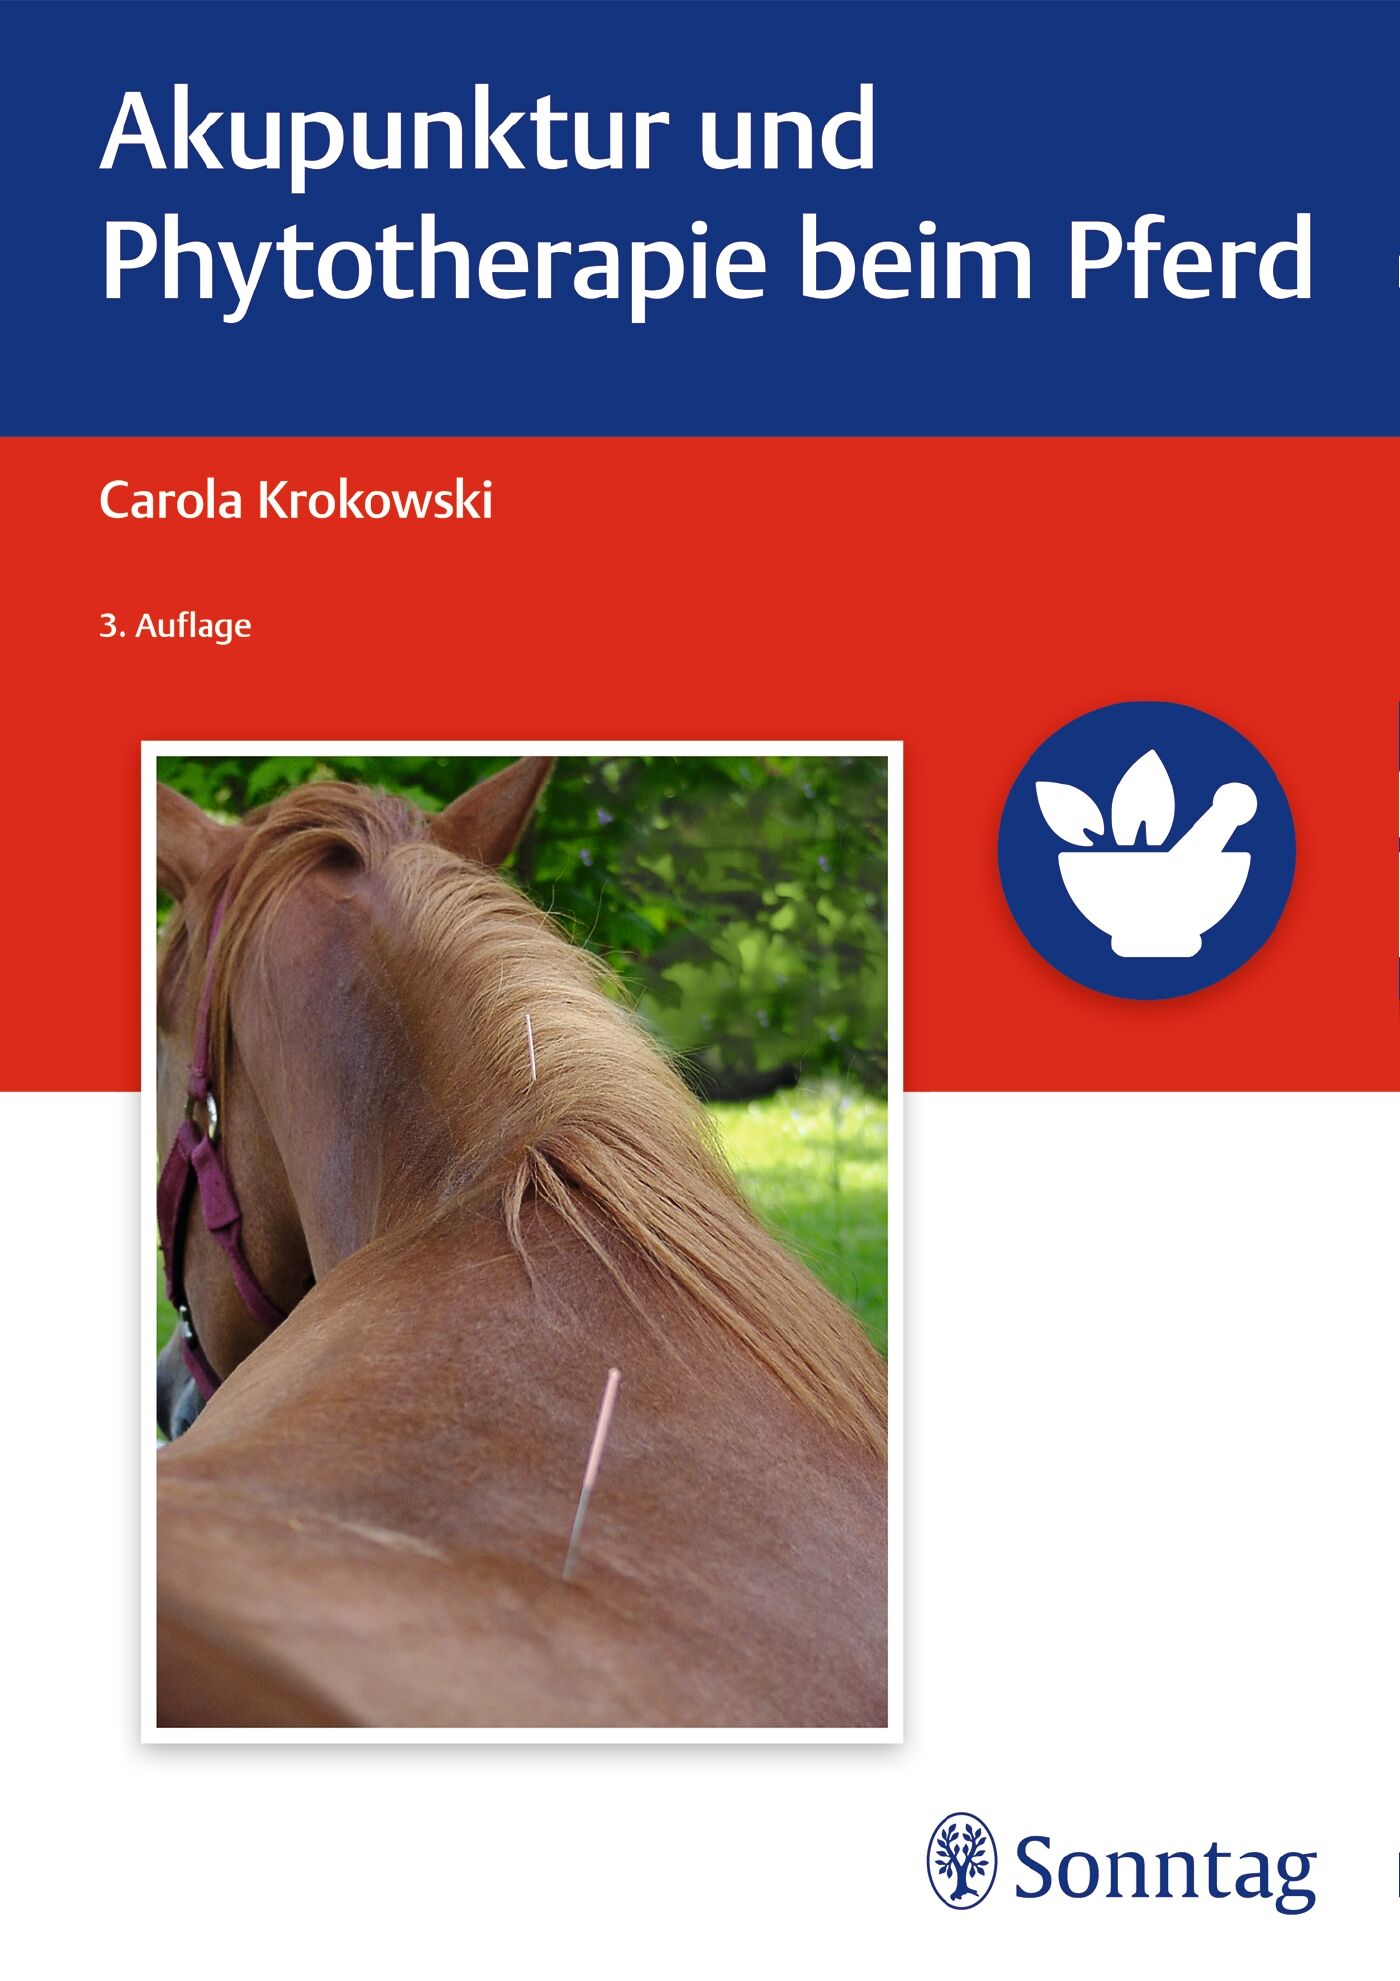 Akupunktur und Phytotherapie beim Pferd, 9783132415973